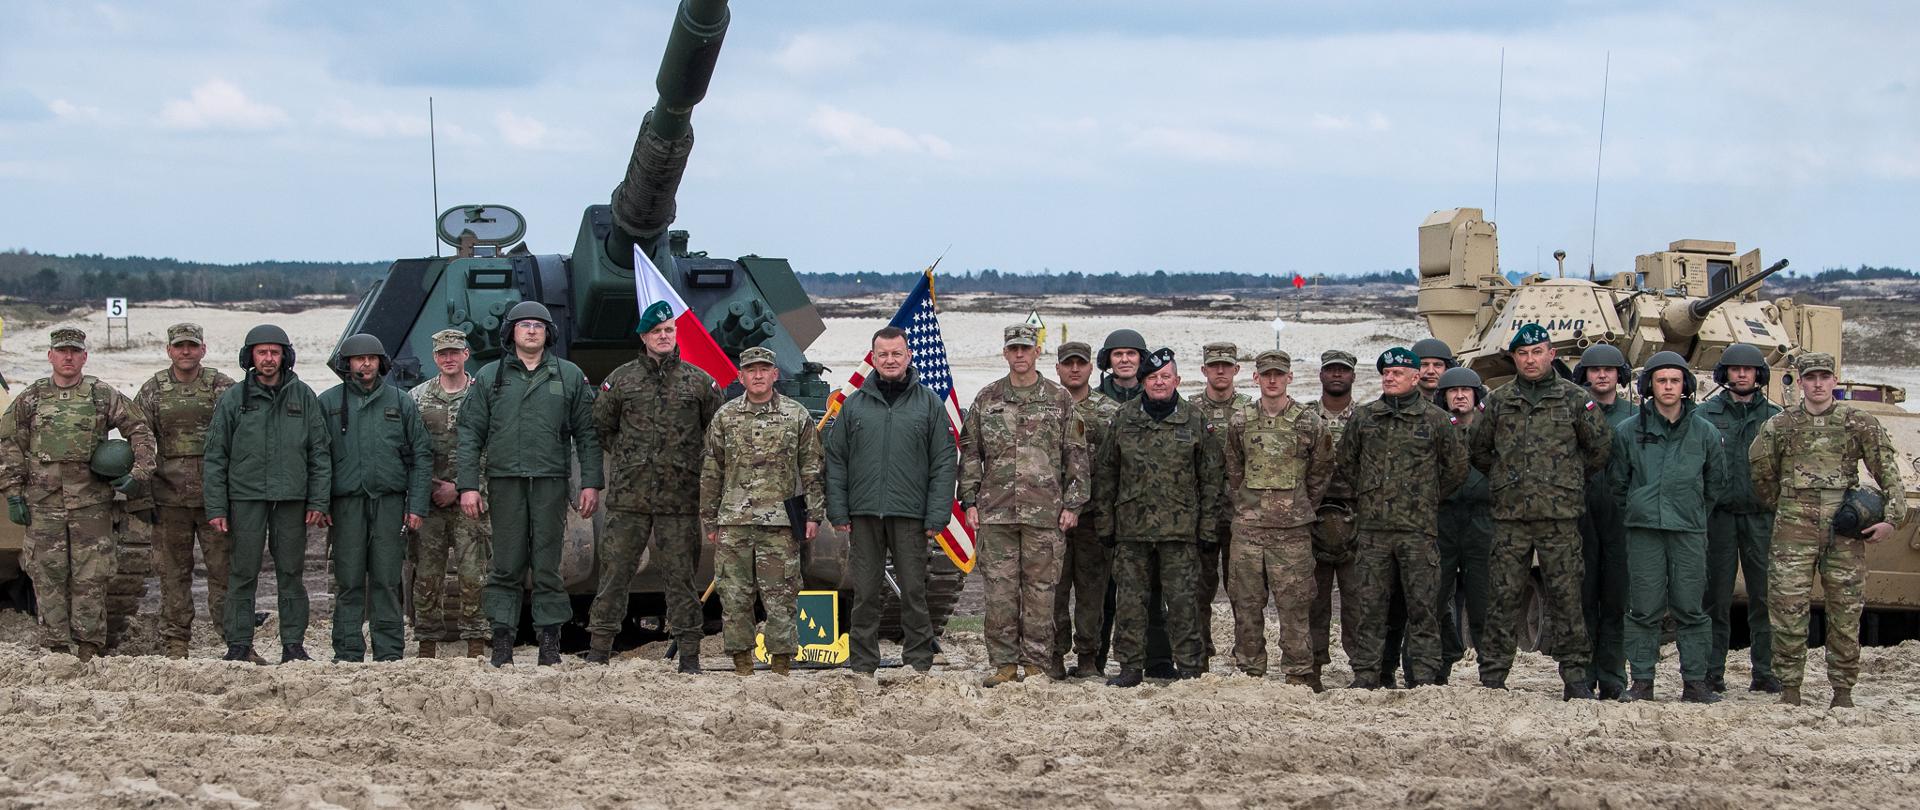 Polsko-amerykańskie szkolenie wzmacnia bezpieczeństwo na wschodniej flance NATO